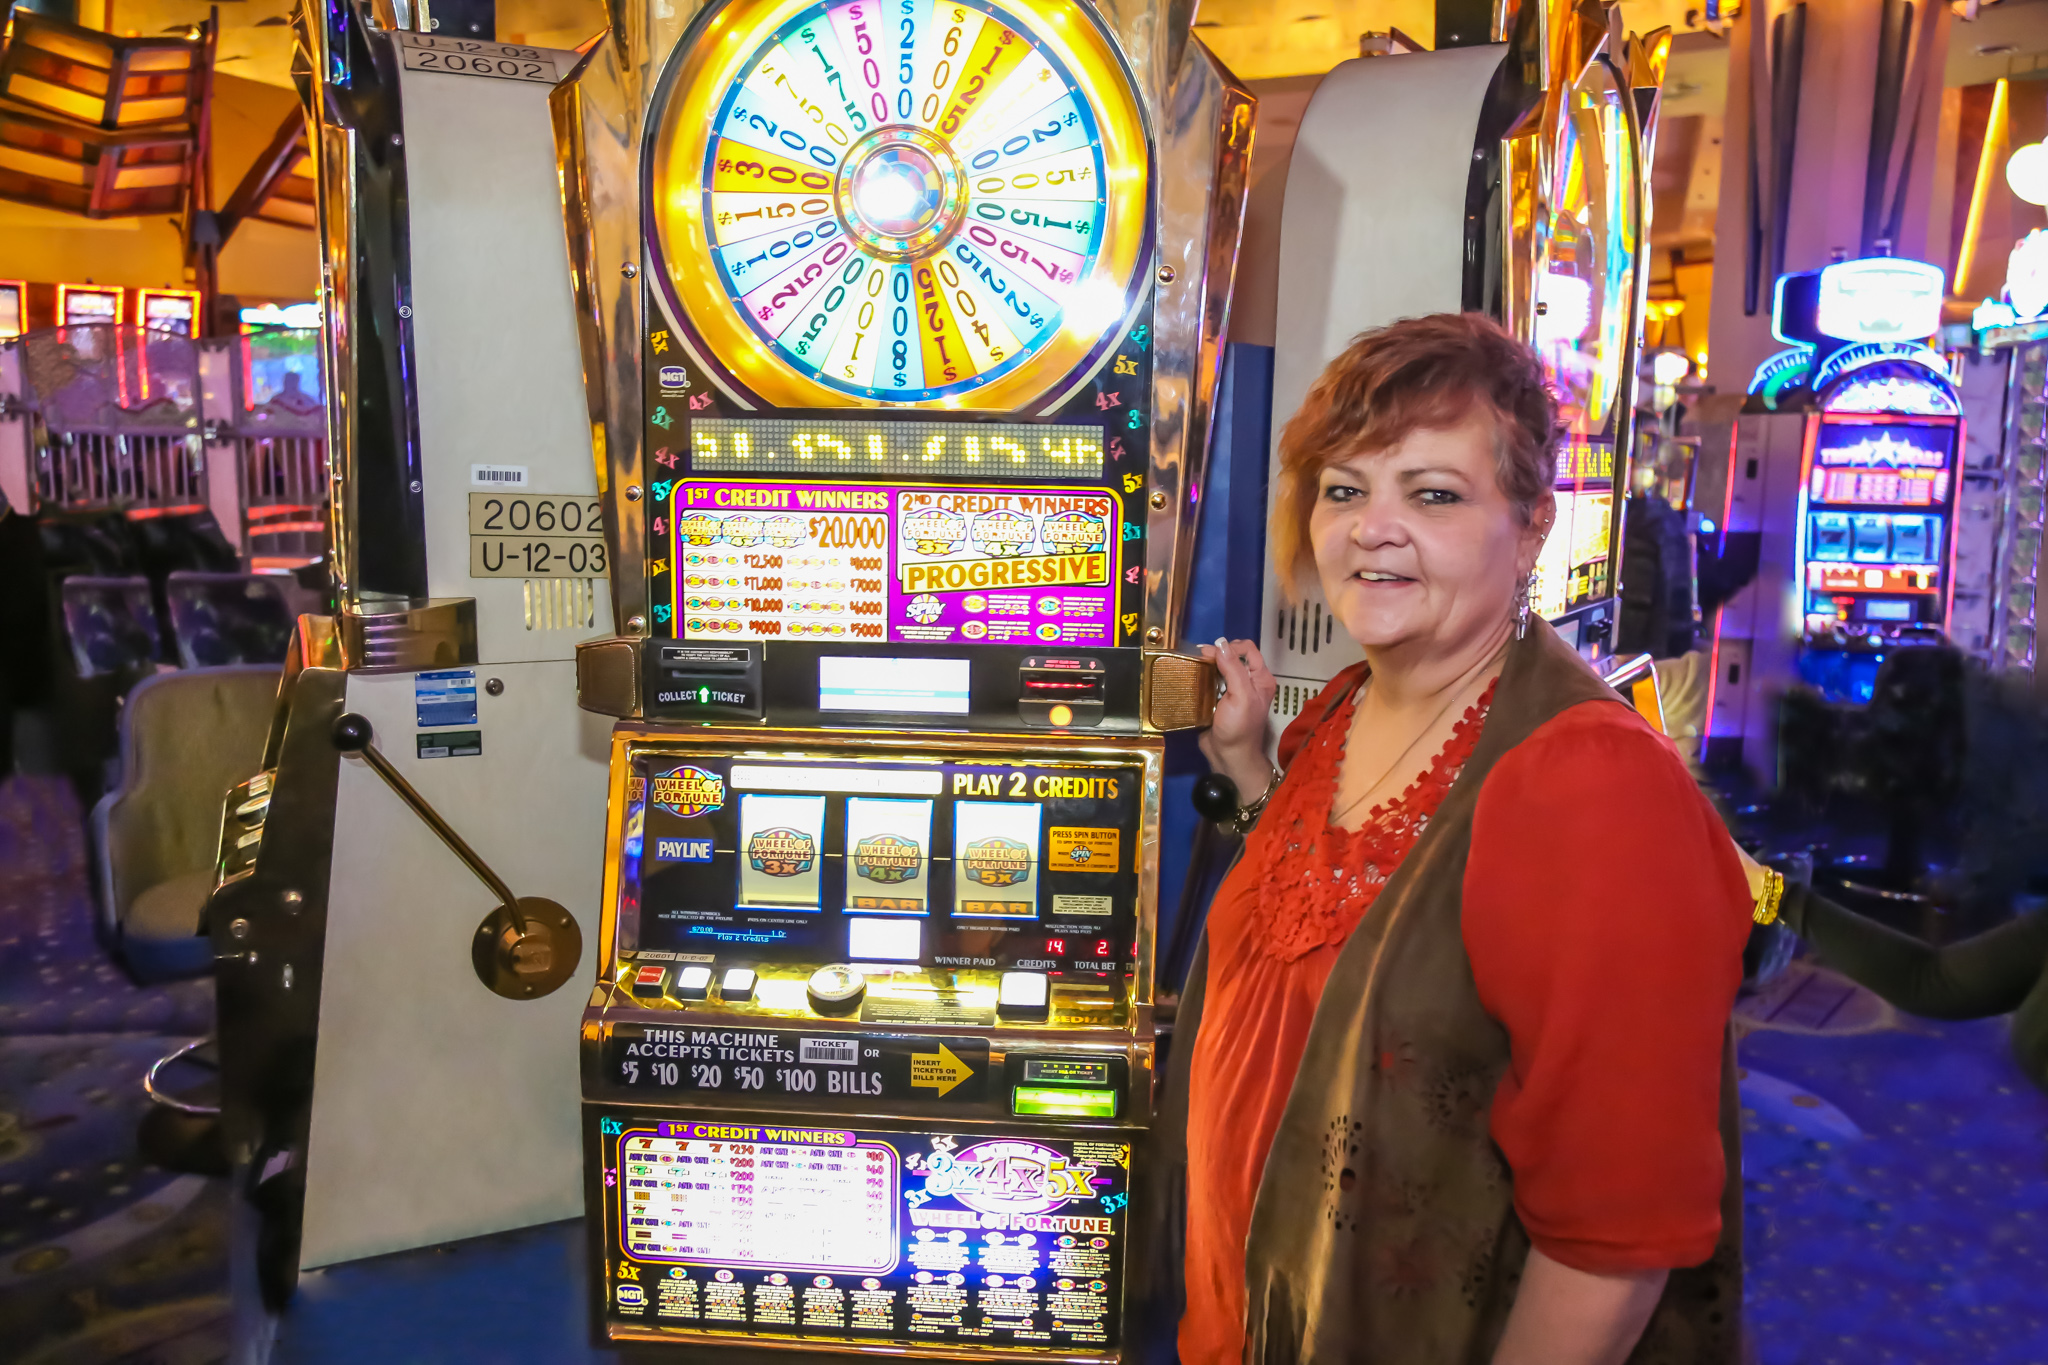 slot machine wins at foxwoods